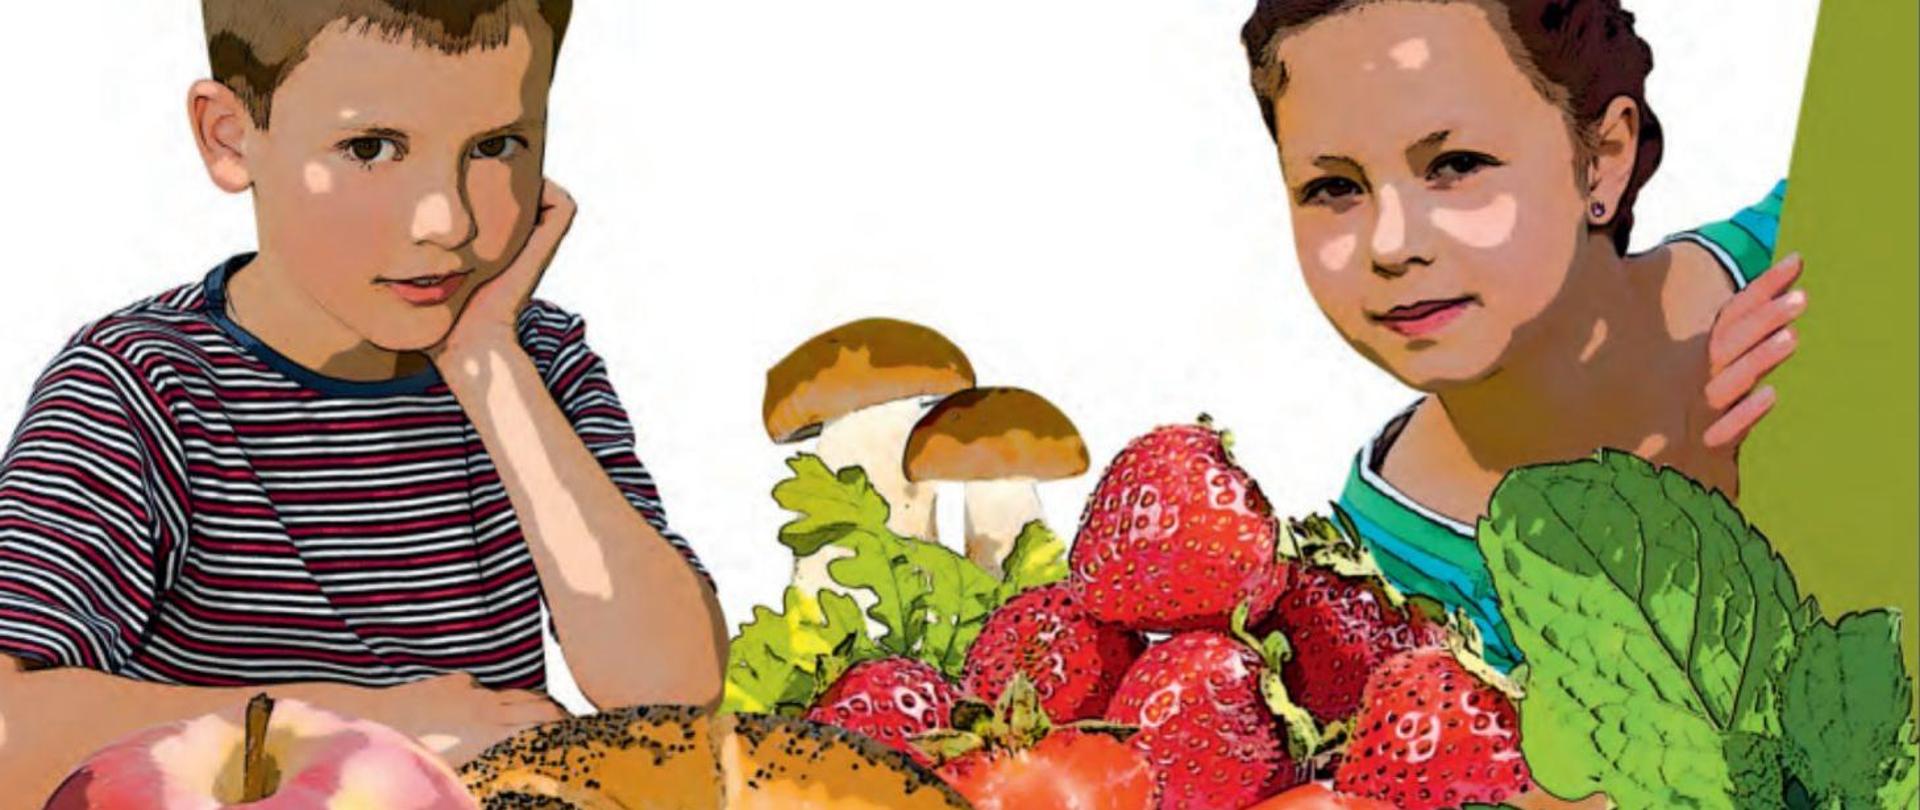 Zdjęcie przedstawia dziewczynkę z chłopakiem, którzy są otoczeni owocami oraz grzybami.